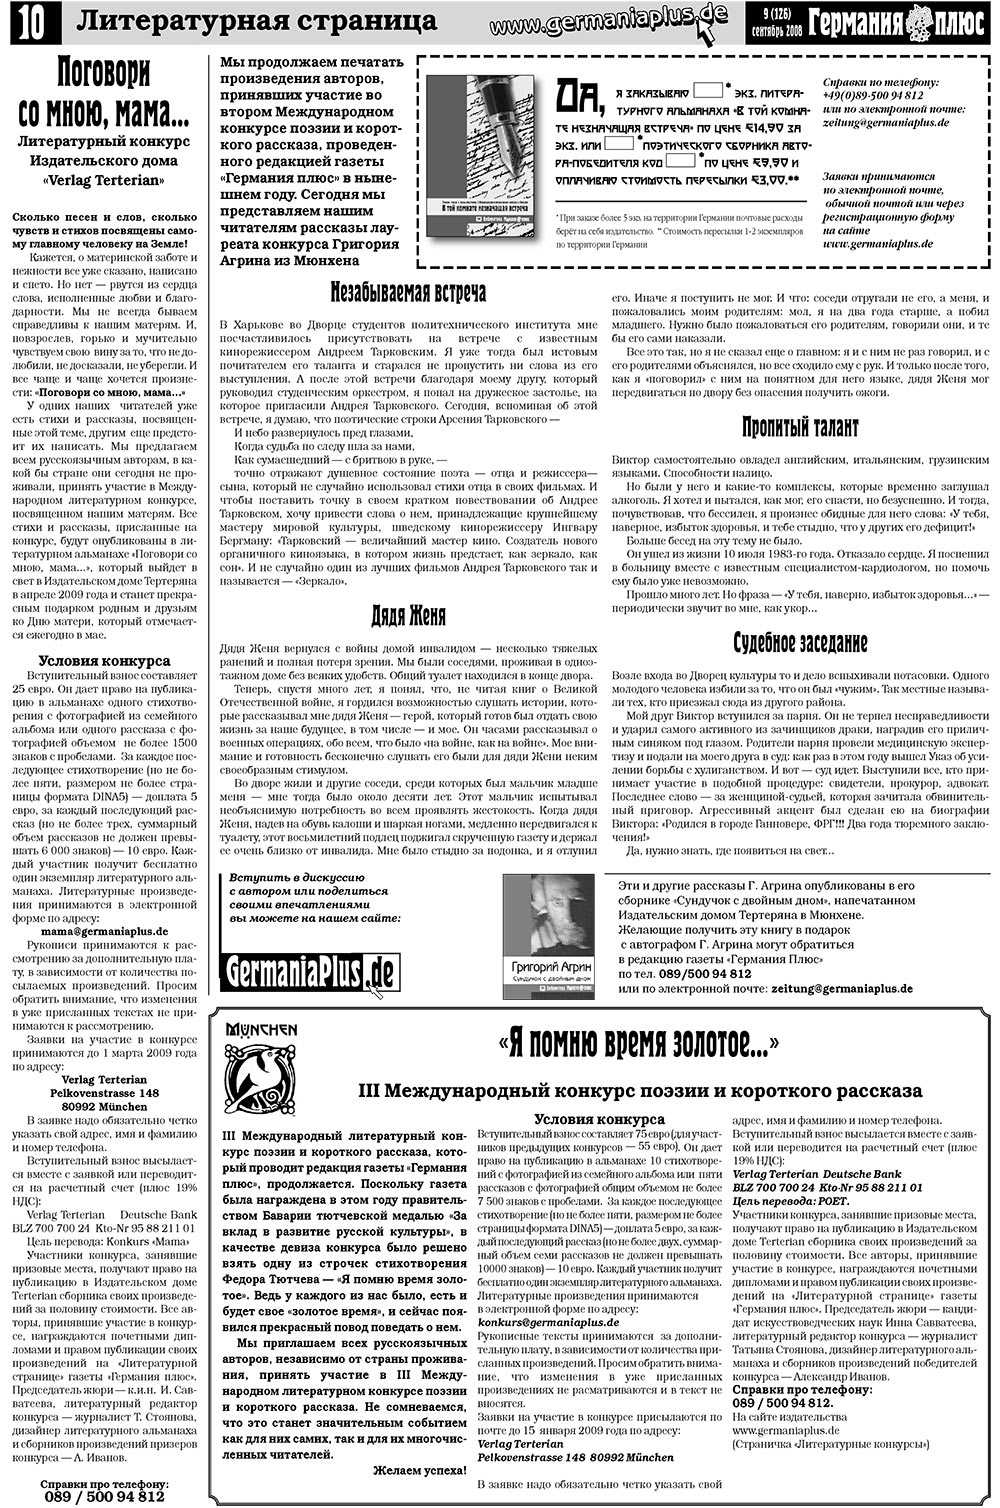 Германия плюс, газета. 2008 №9 стр.14